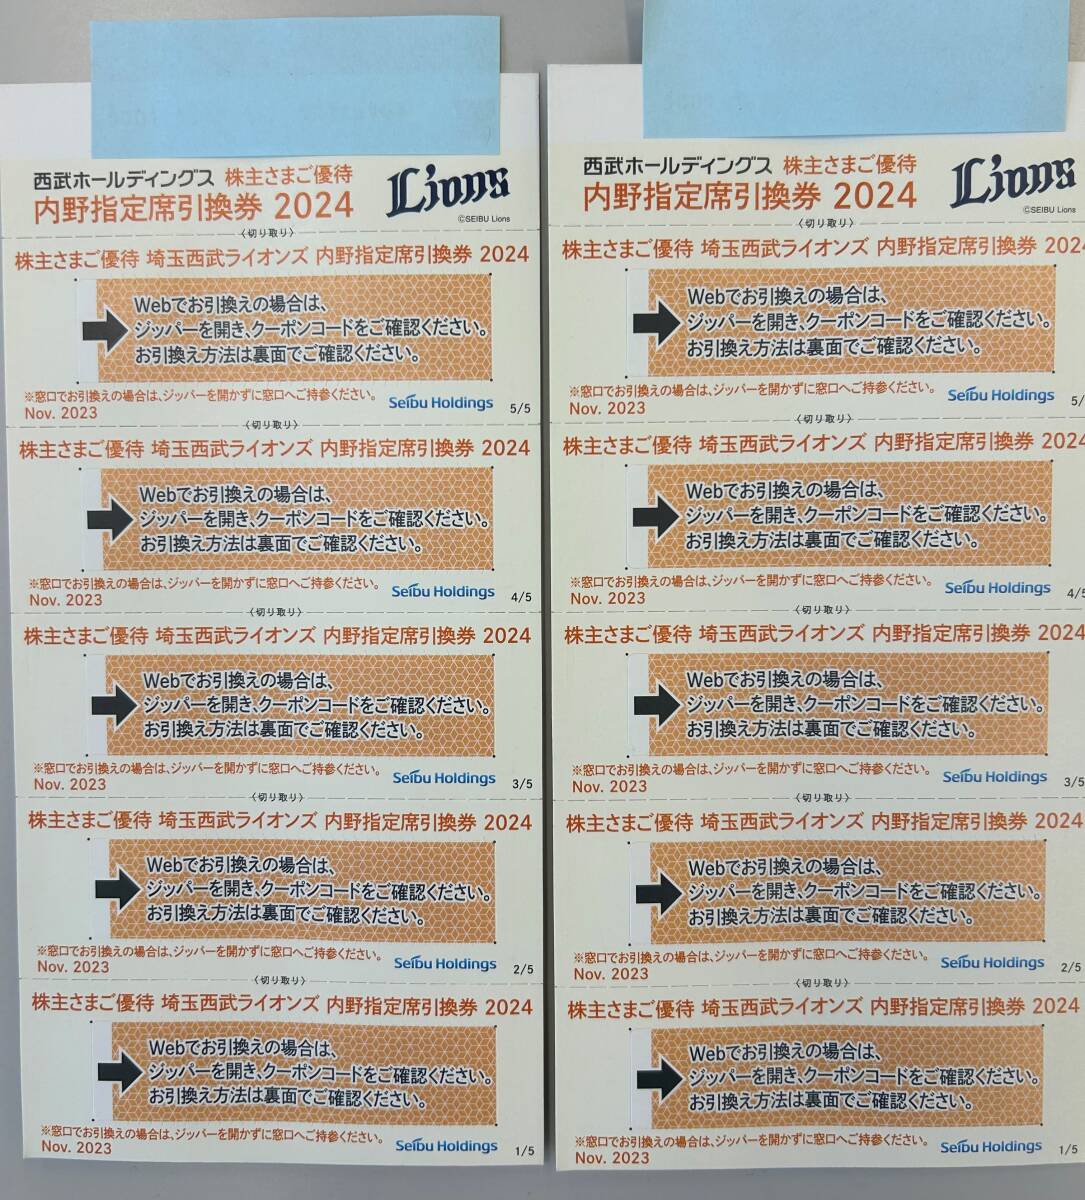 【送料無料】西武HD 株主優待 ライオンズ内野指定席引換券 10枚 おまけ付 3の画像1